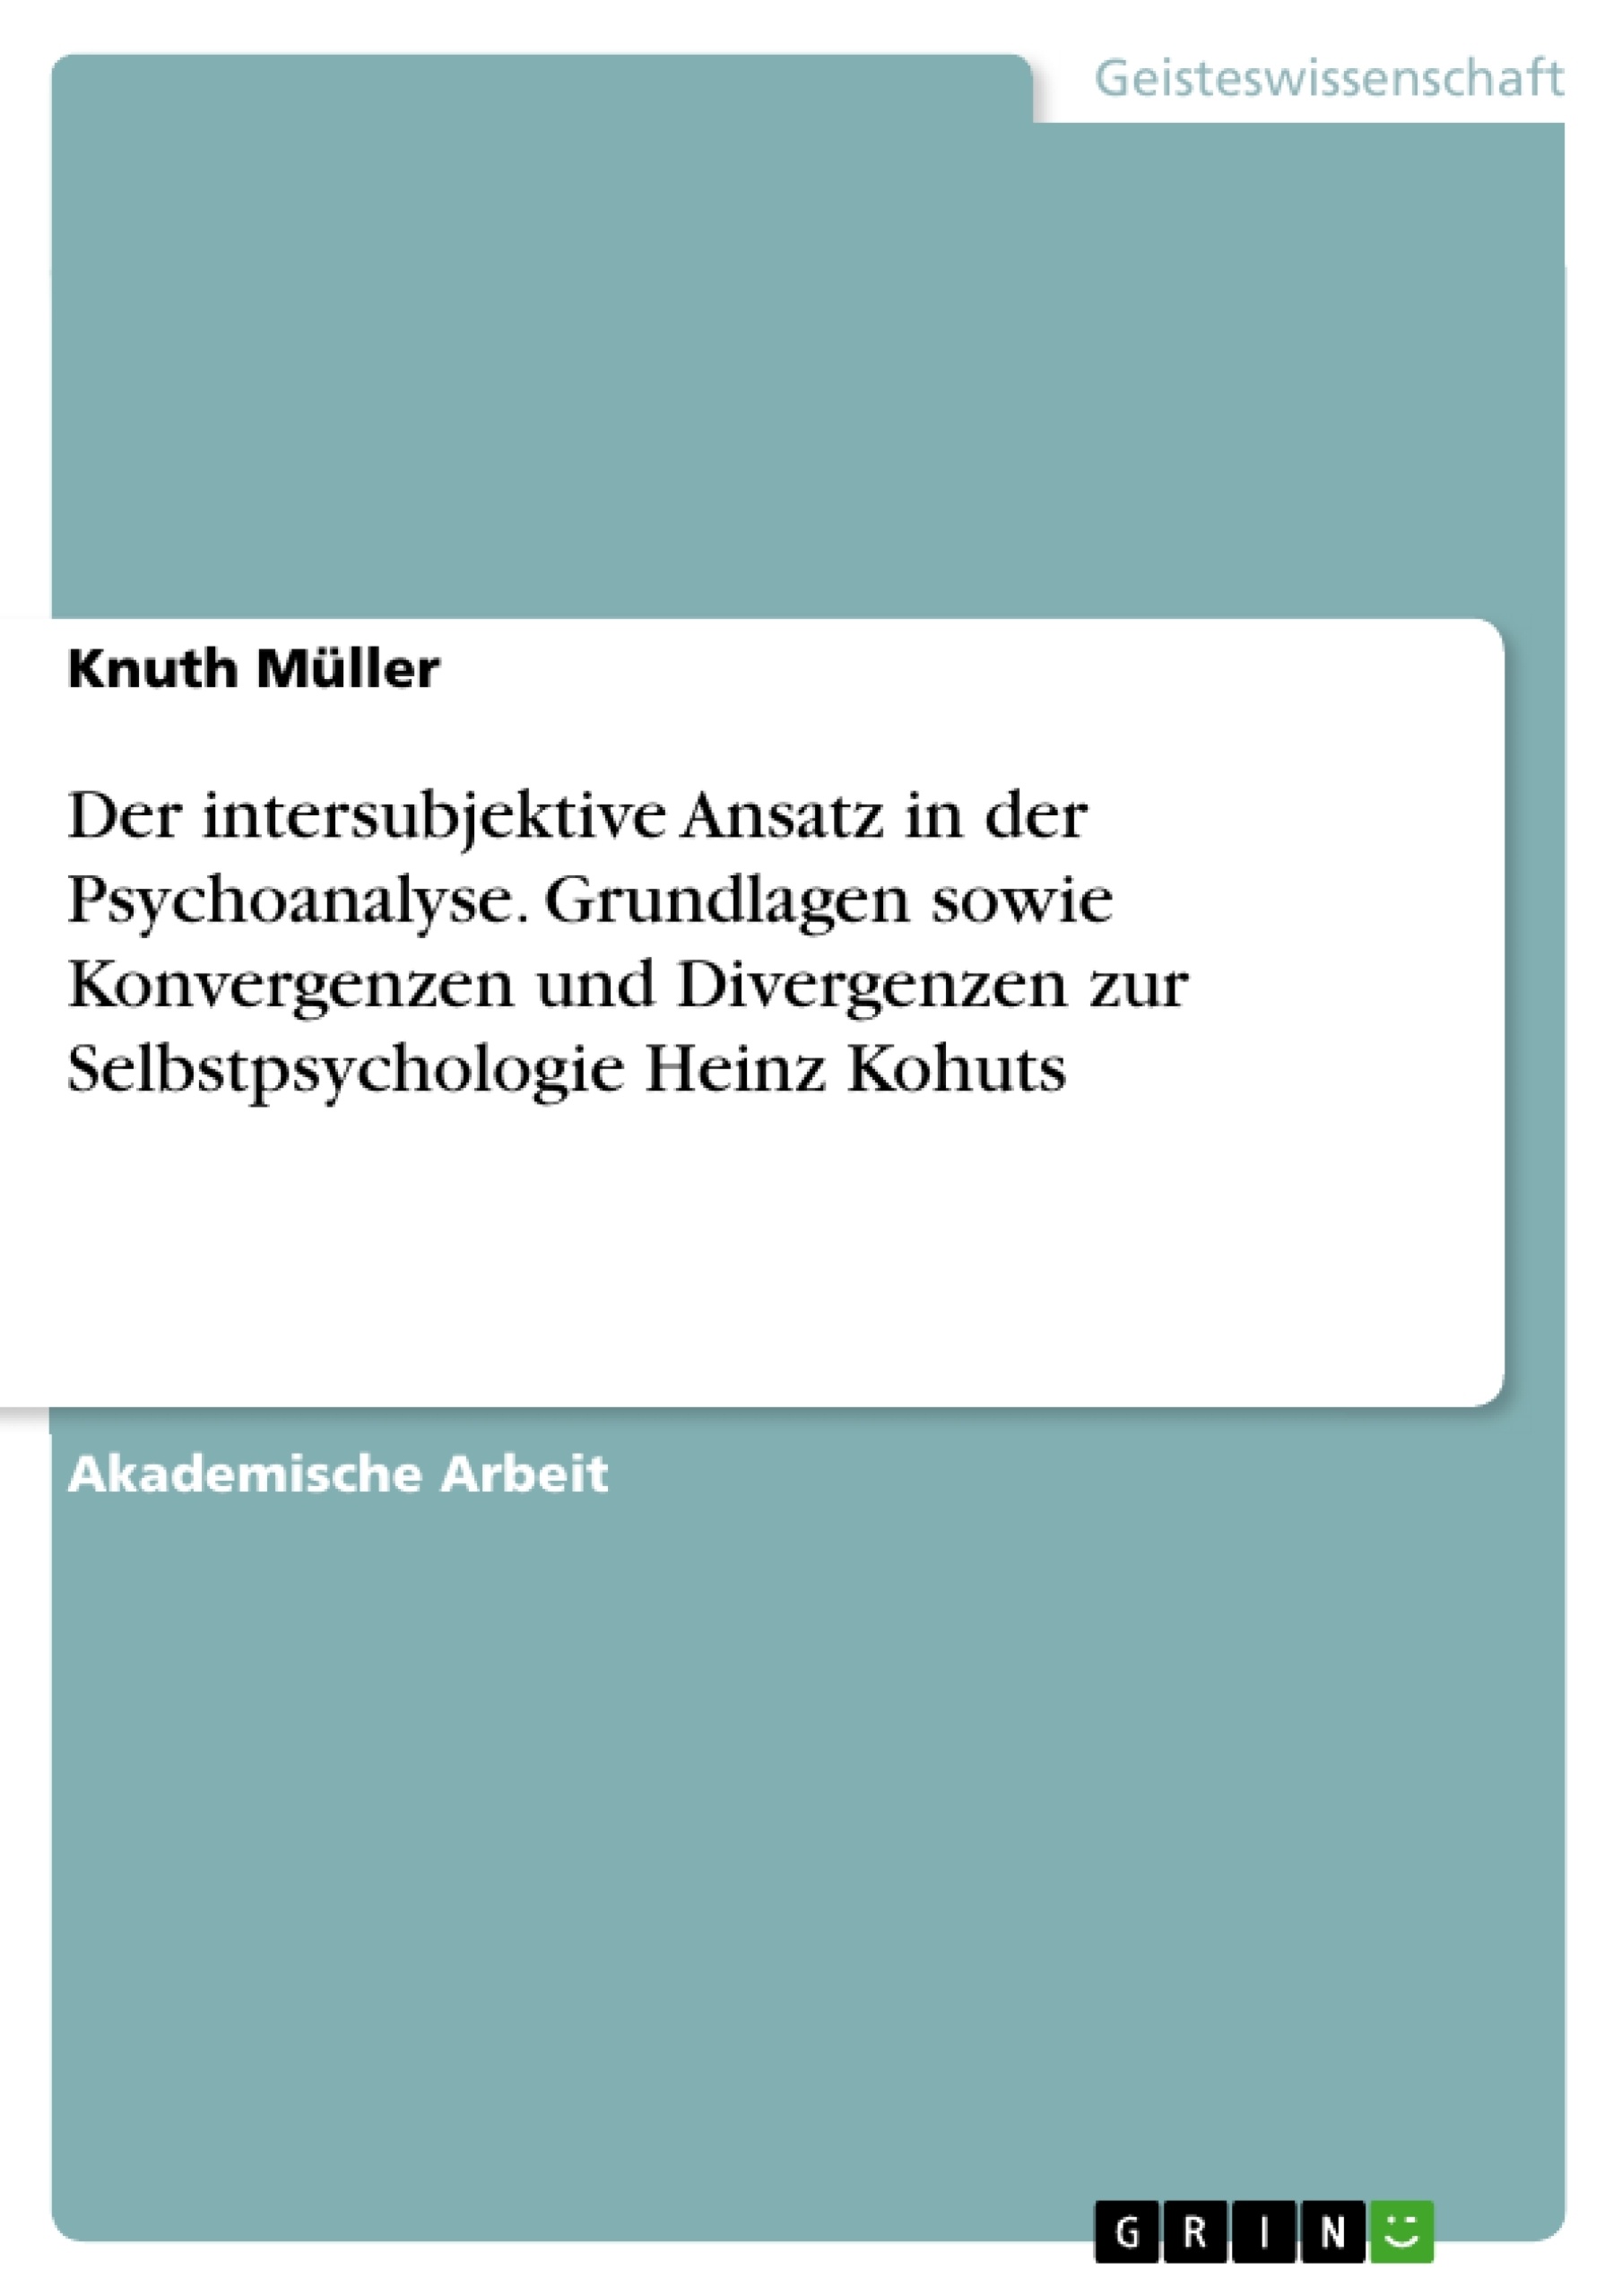 Titre: Der intersubjektive Ansatz in der Psychoanalyse. Grundlagen sowie Konvergenzen und Divergenzen zur Selbstpsychologie Heinz Kohuts